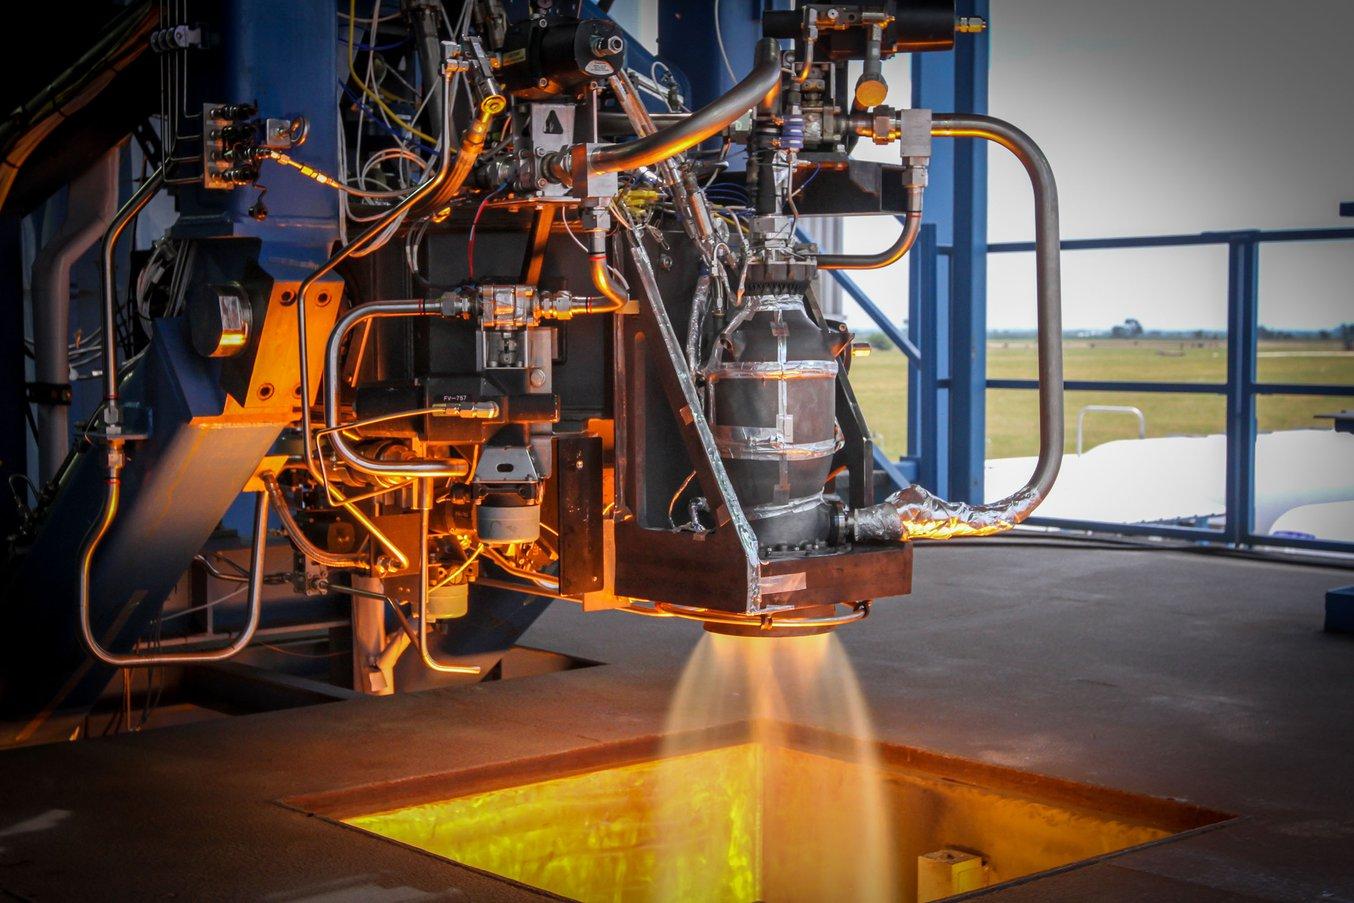 Le vaisseau SpaceX’s Crew Dragon, équipé de moteurs SuperDraco imprimés en 3D, a effectué son premier vol en mars 2019. (Source : SpaceX)